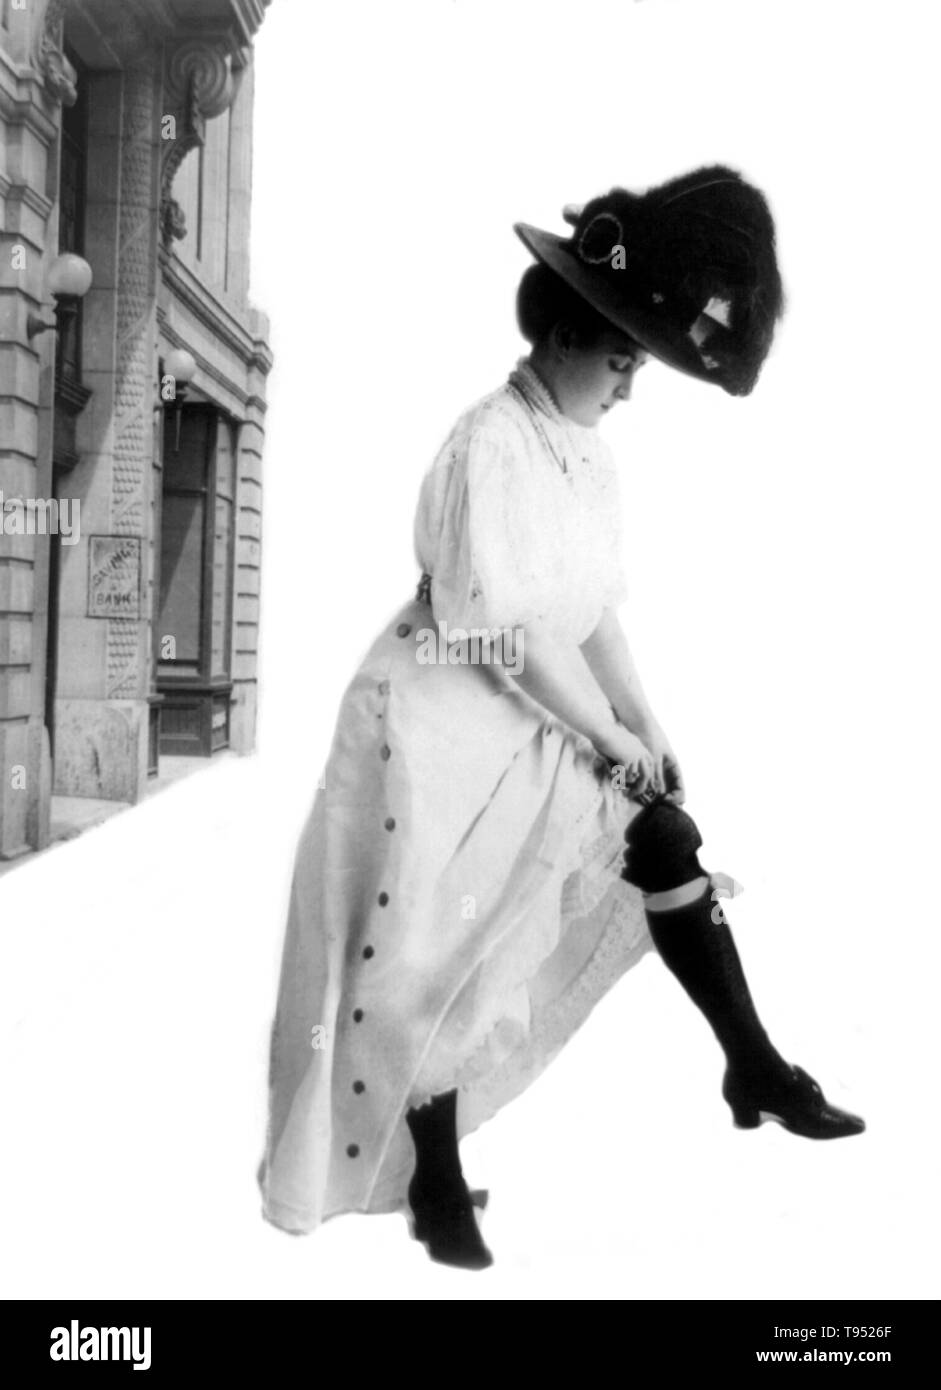 Dal titolo: 'Bonifico Bancario' donna in piedi al di fuori del risparmio bancario; indossando abiti lunghi e lungo cappello piumato; Lei alza il mantello per inserire $5 bill all'interno di lei gartered calza. Fotografata da arte consolidato Company, 1908. Foto Stock